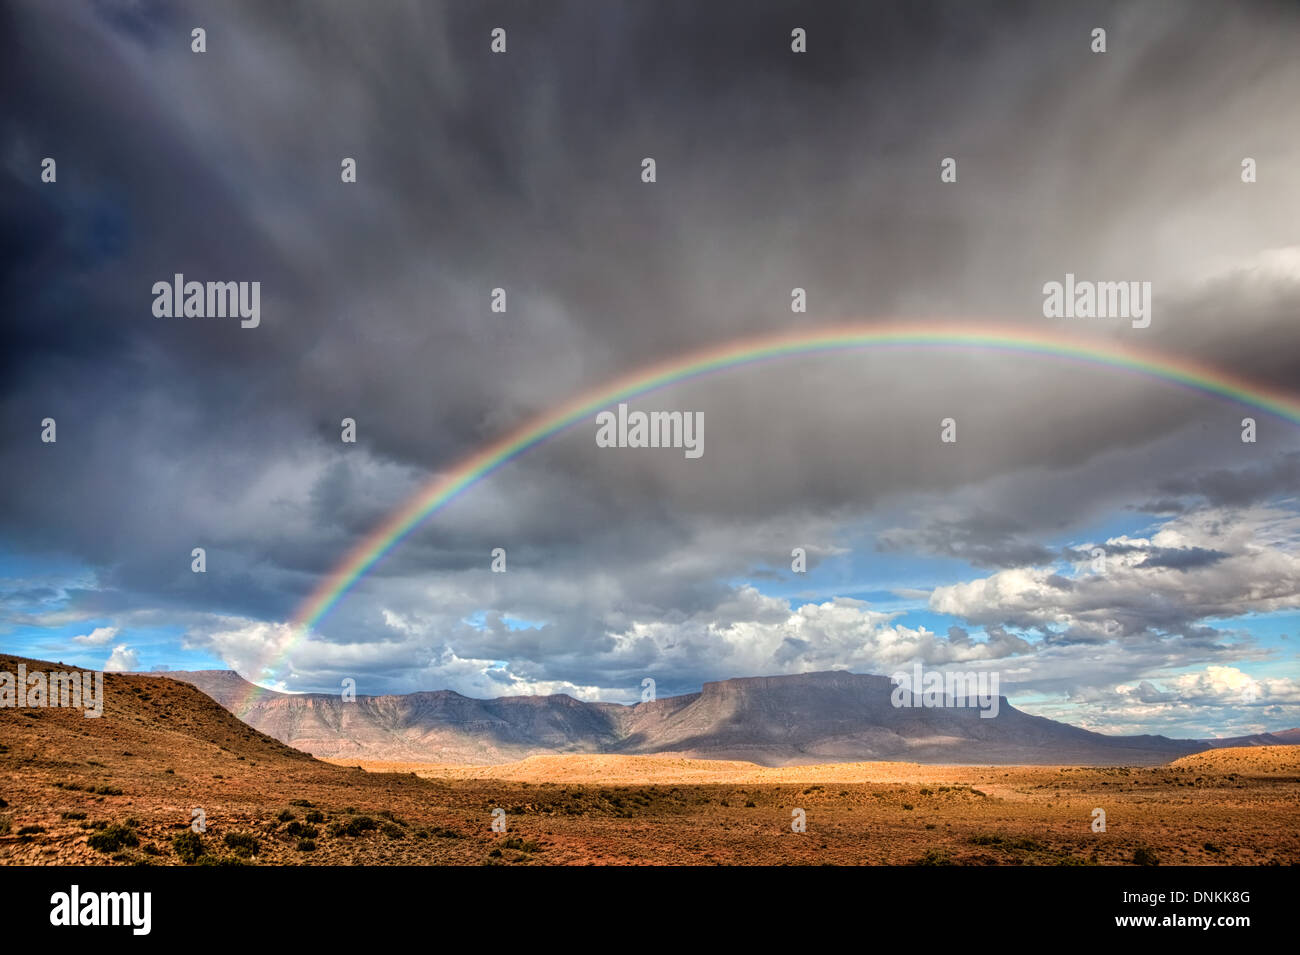 Ein Regenbogen über dem Karoo Nationalpark in Südafrika. Ein Regenbogen über dem Karoo Nationalpark in Südafrika. Stockfoto